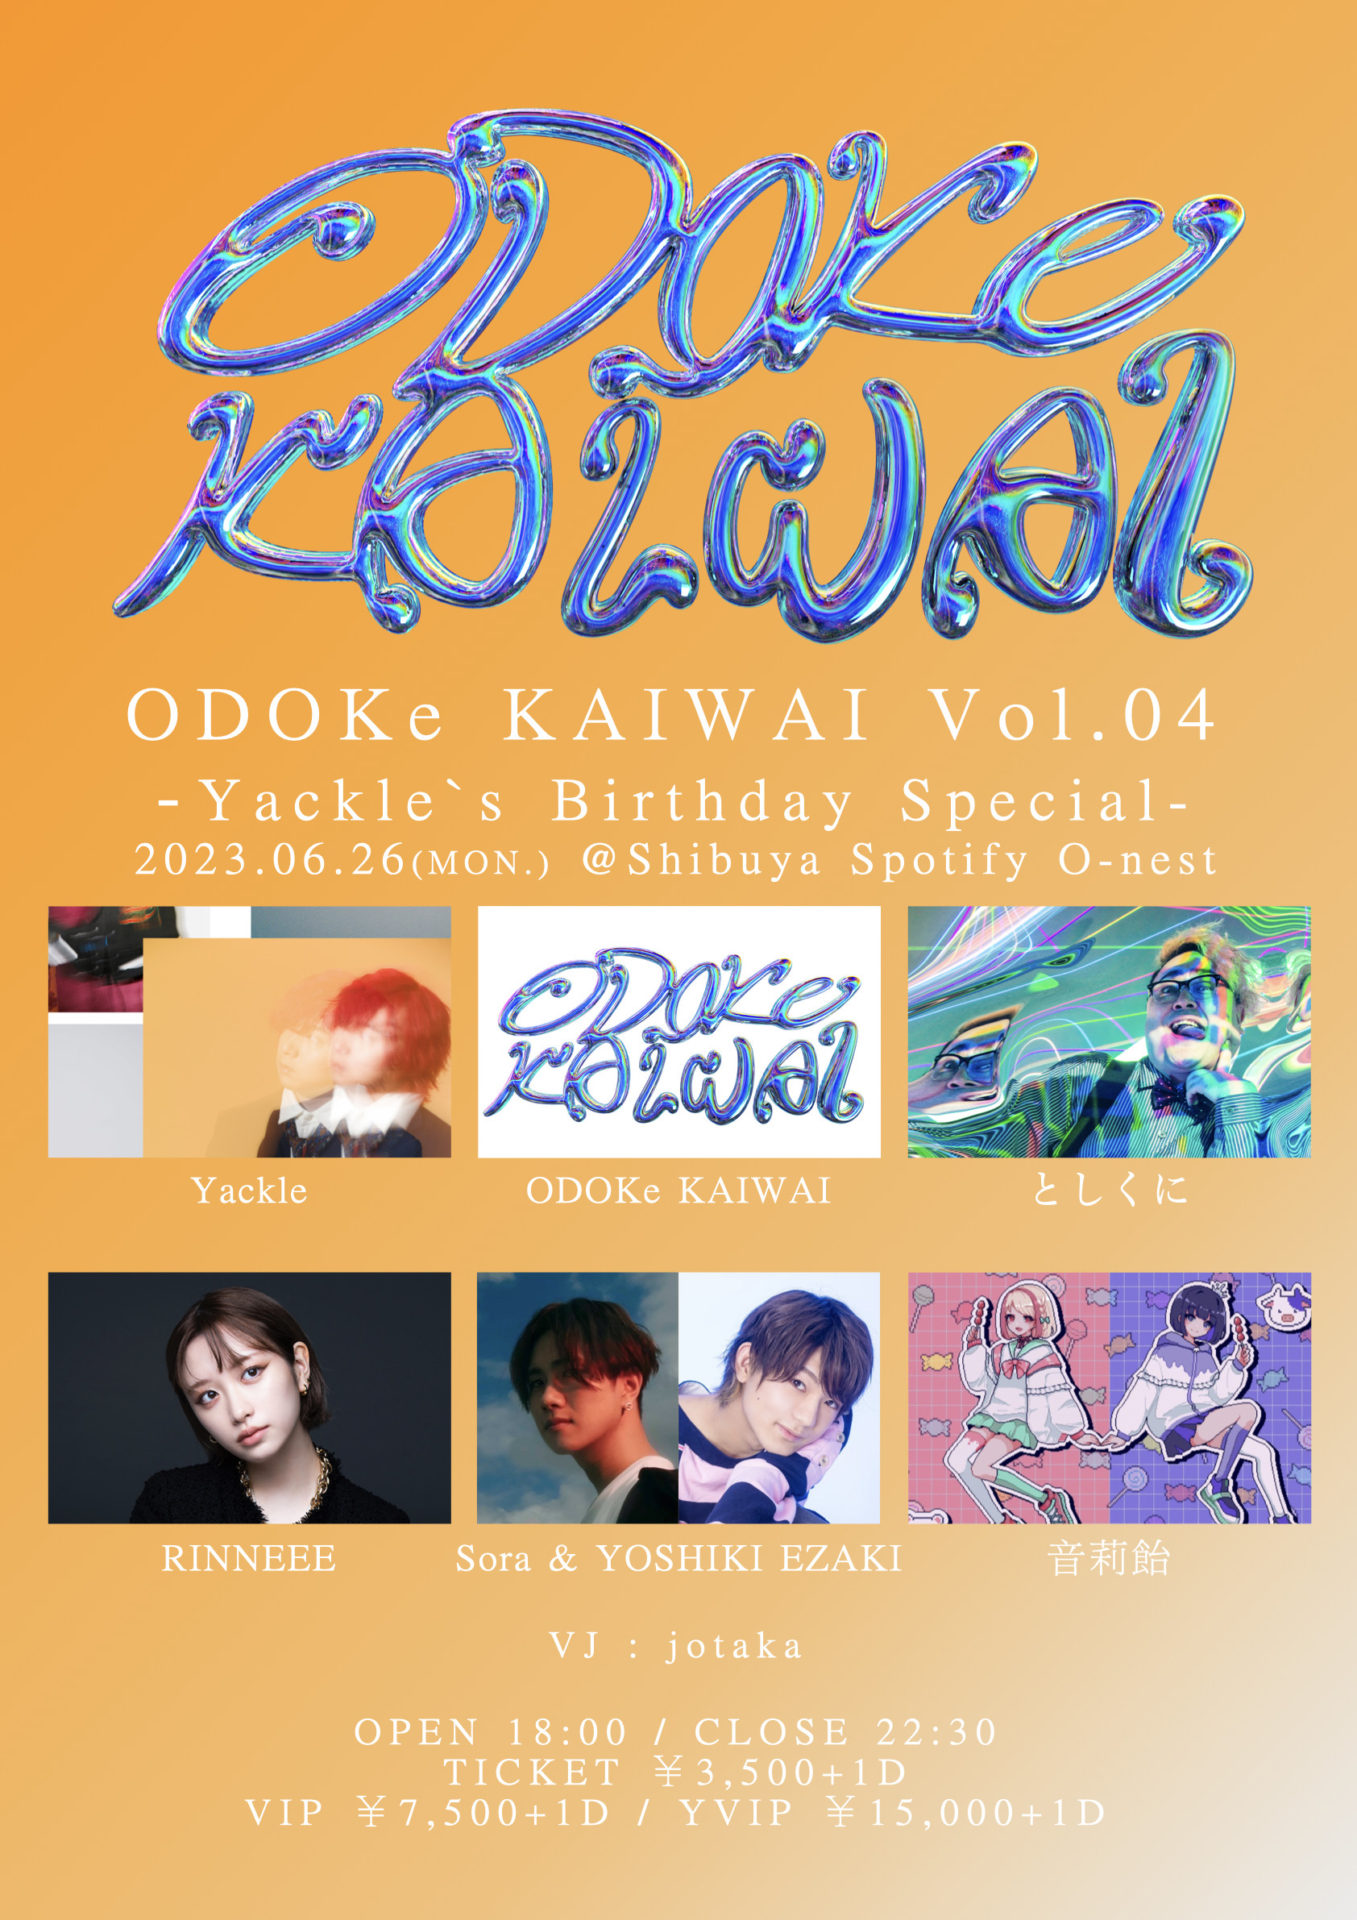 ODOKe KAIWAI Vol.04 -Yackle’s Birthday Special-